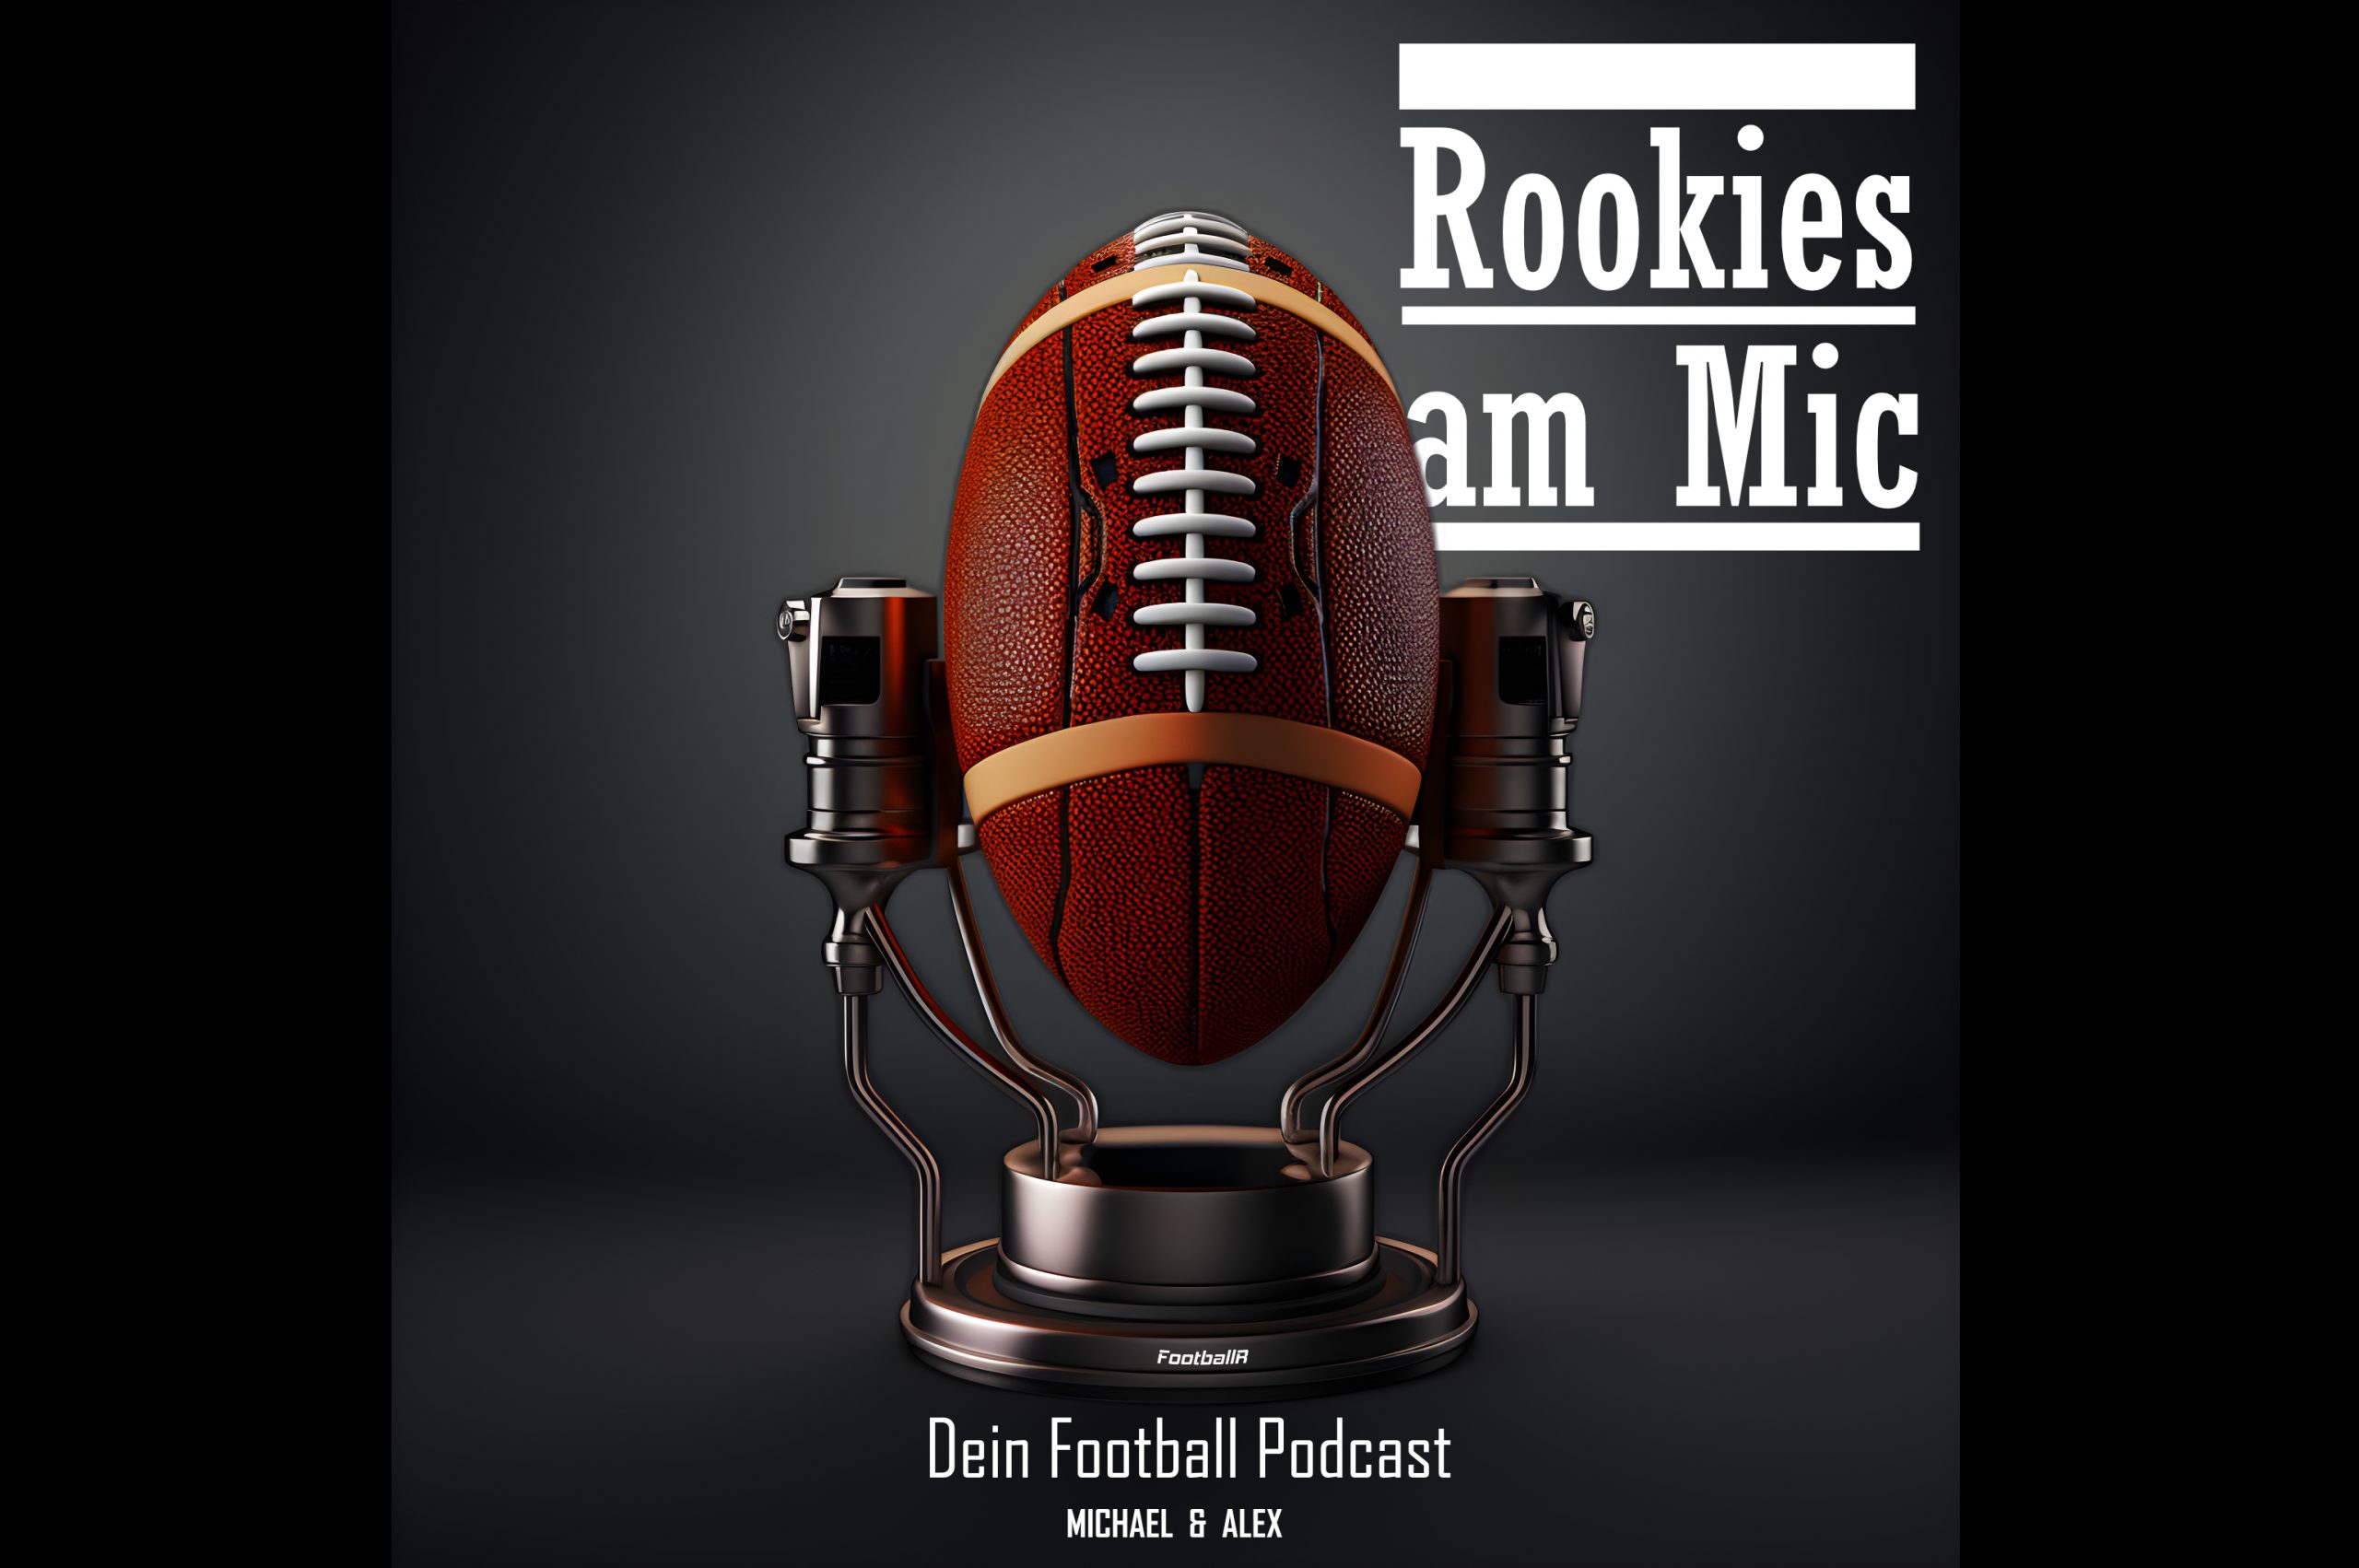 FootballR - NFL - Diese Beschreibung wurde automatisch generiert. Schauen Sie sich den Fußball-Podcast „Rookies am Mic“ für einen erfolgreichen Start an, während wir über alles rund um Fußball diskutieren, einschließlich der neuesten Nachrichten, Spielanalysen und Interviews mit Neulingen der Branche: Rookies am Mic - Dein Football Podcast